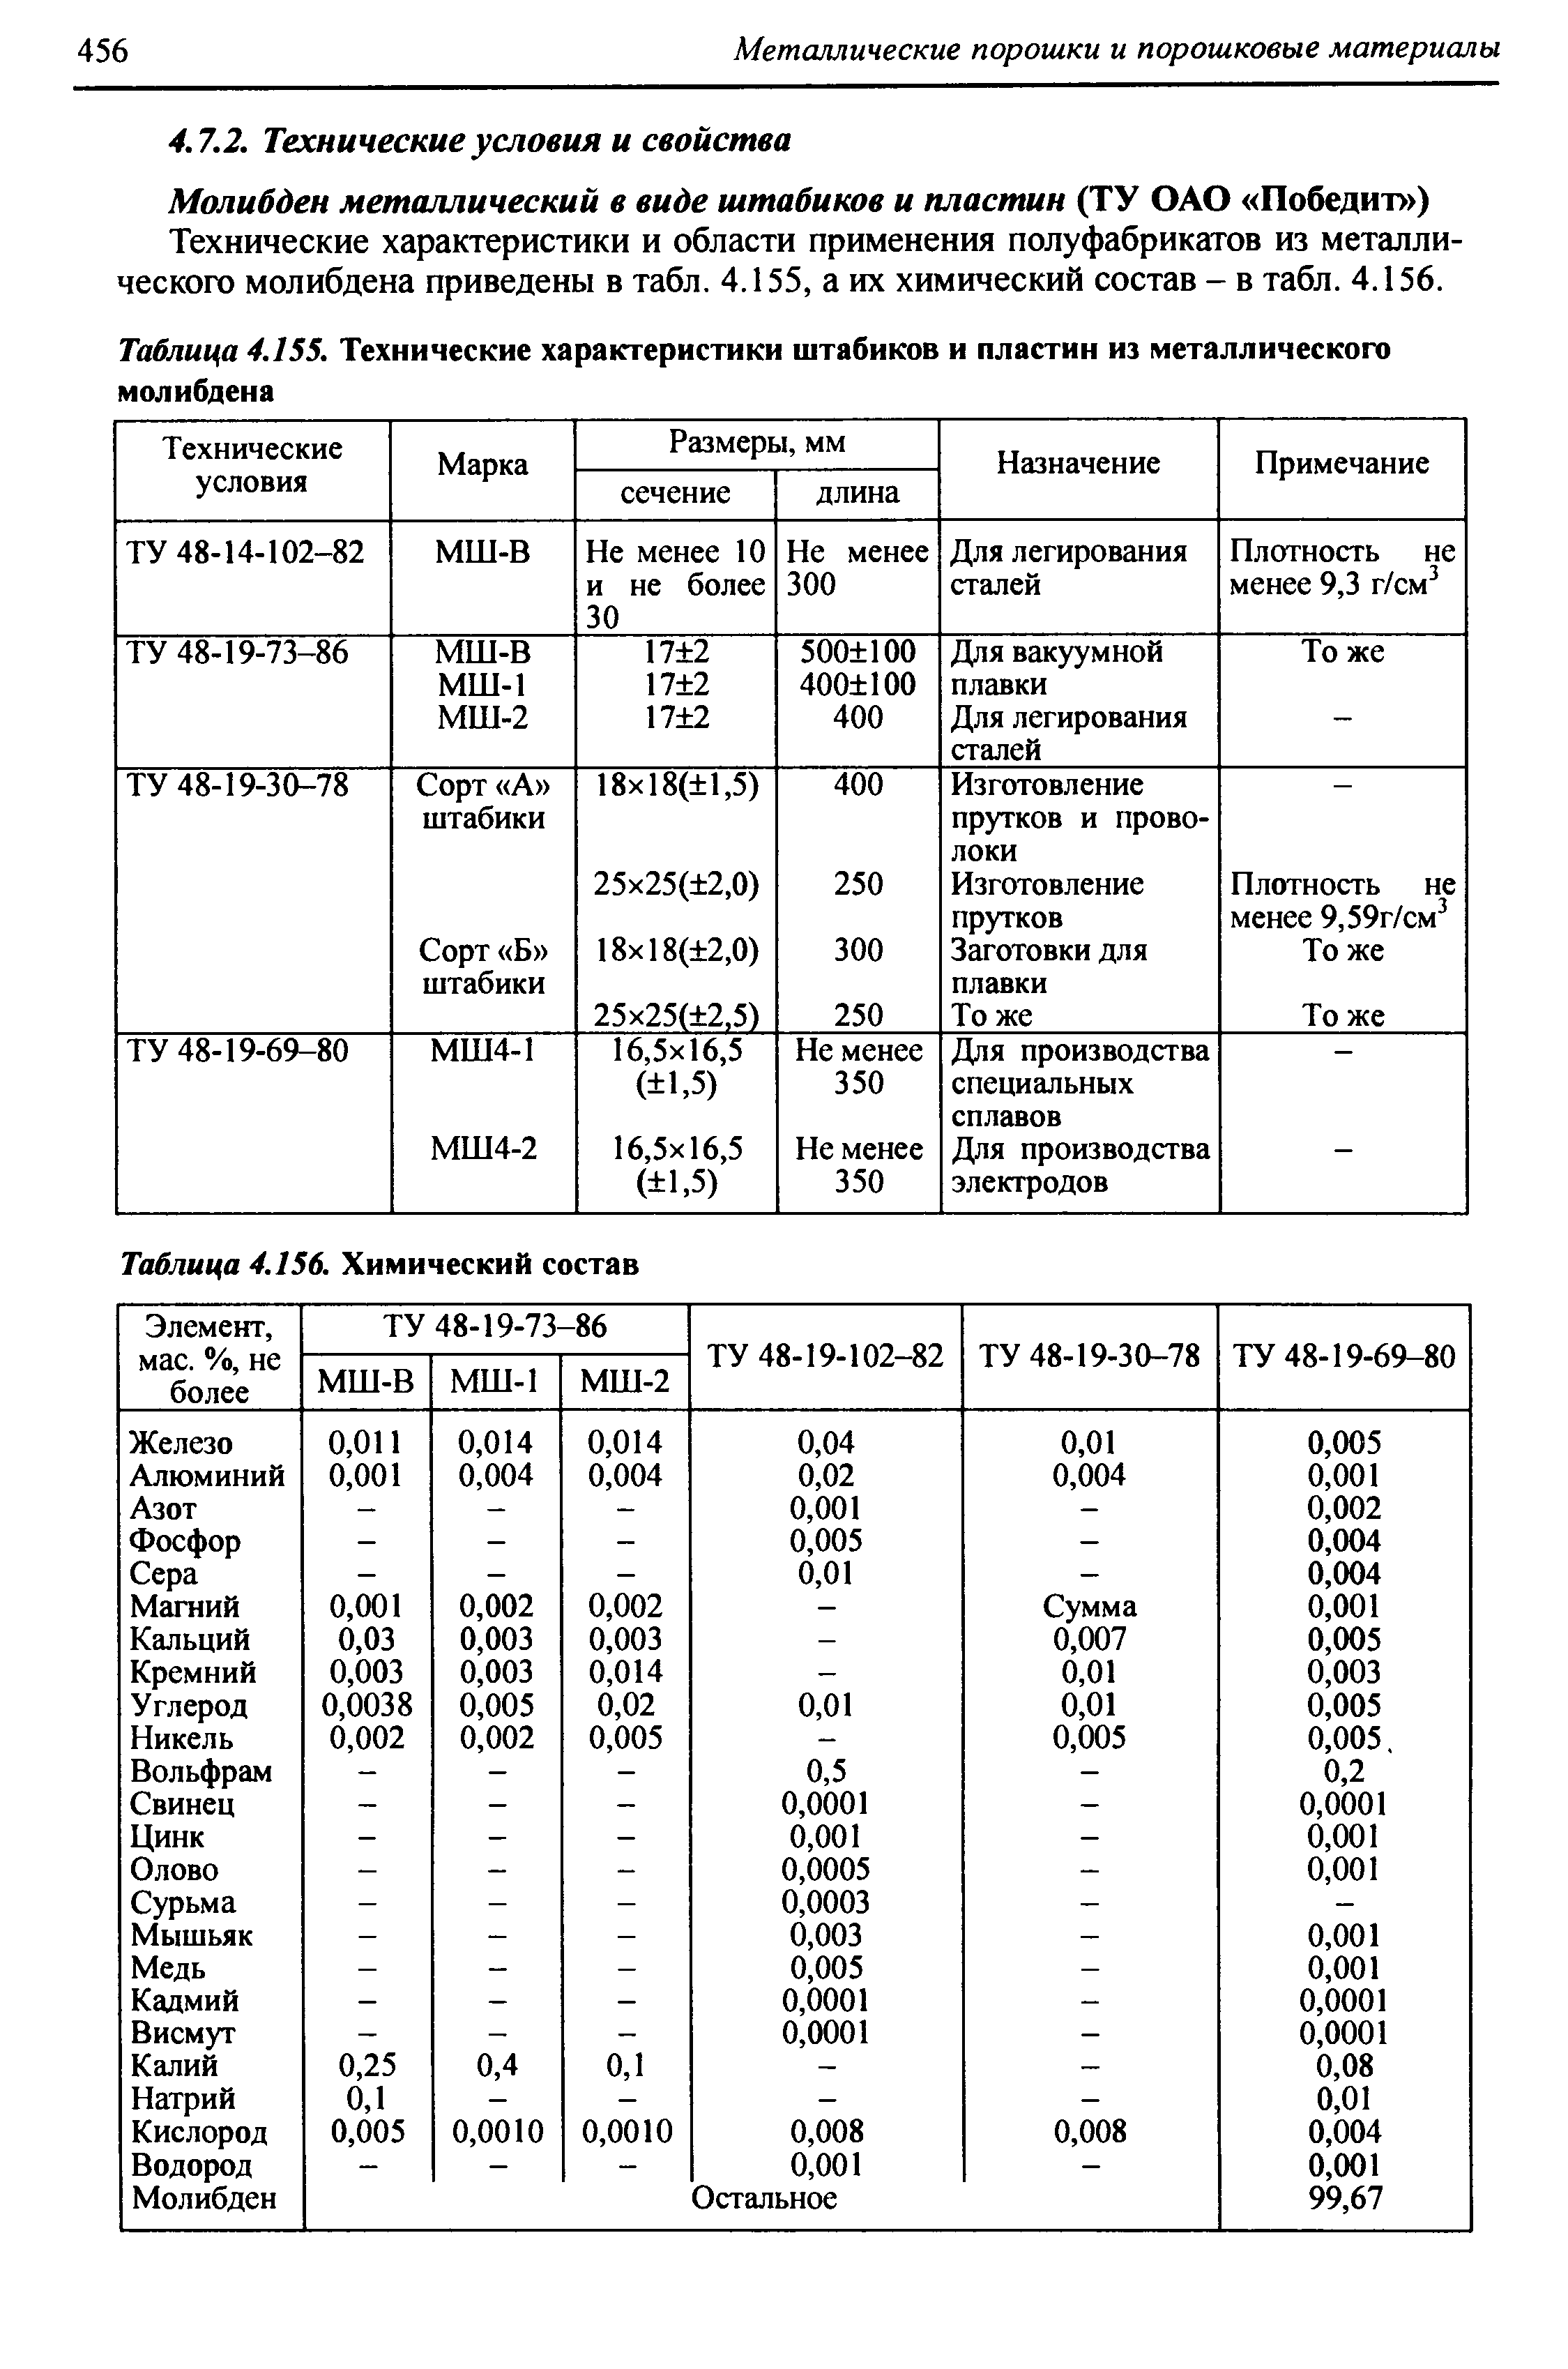 Технические характеристики и области применения полуфабрикатов из металлического молибдена приведены в табл. 4.155, а их химический состав - в табл. 4.156.